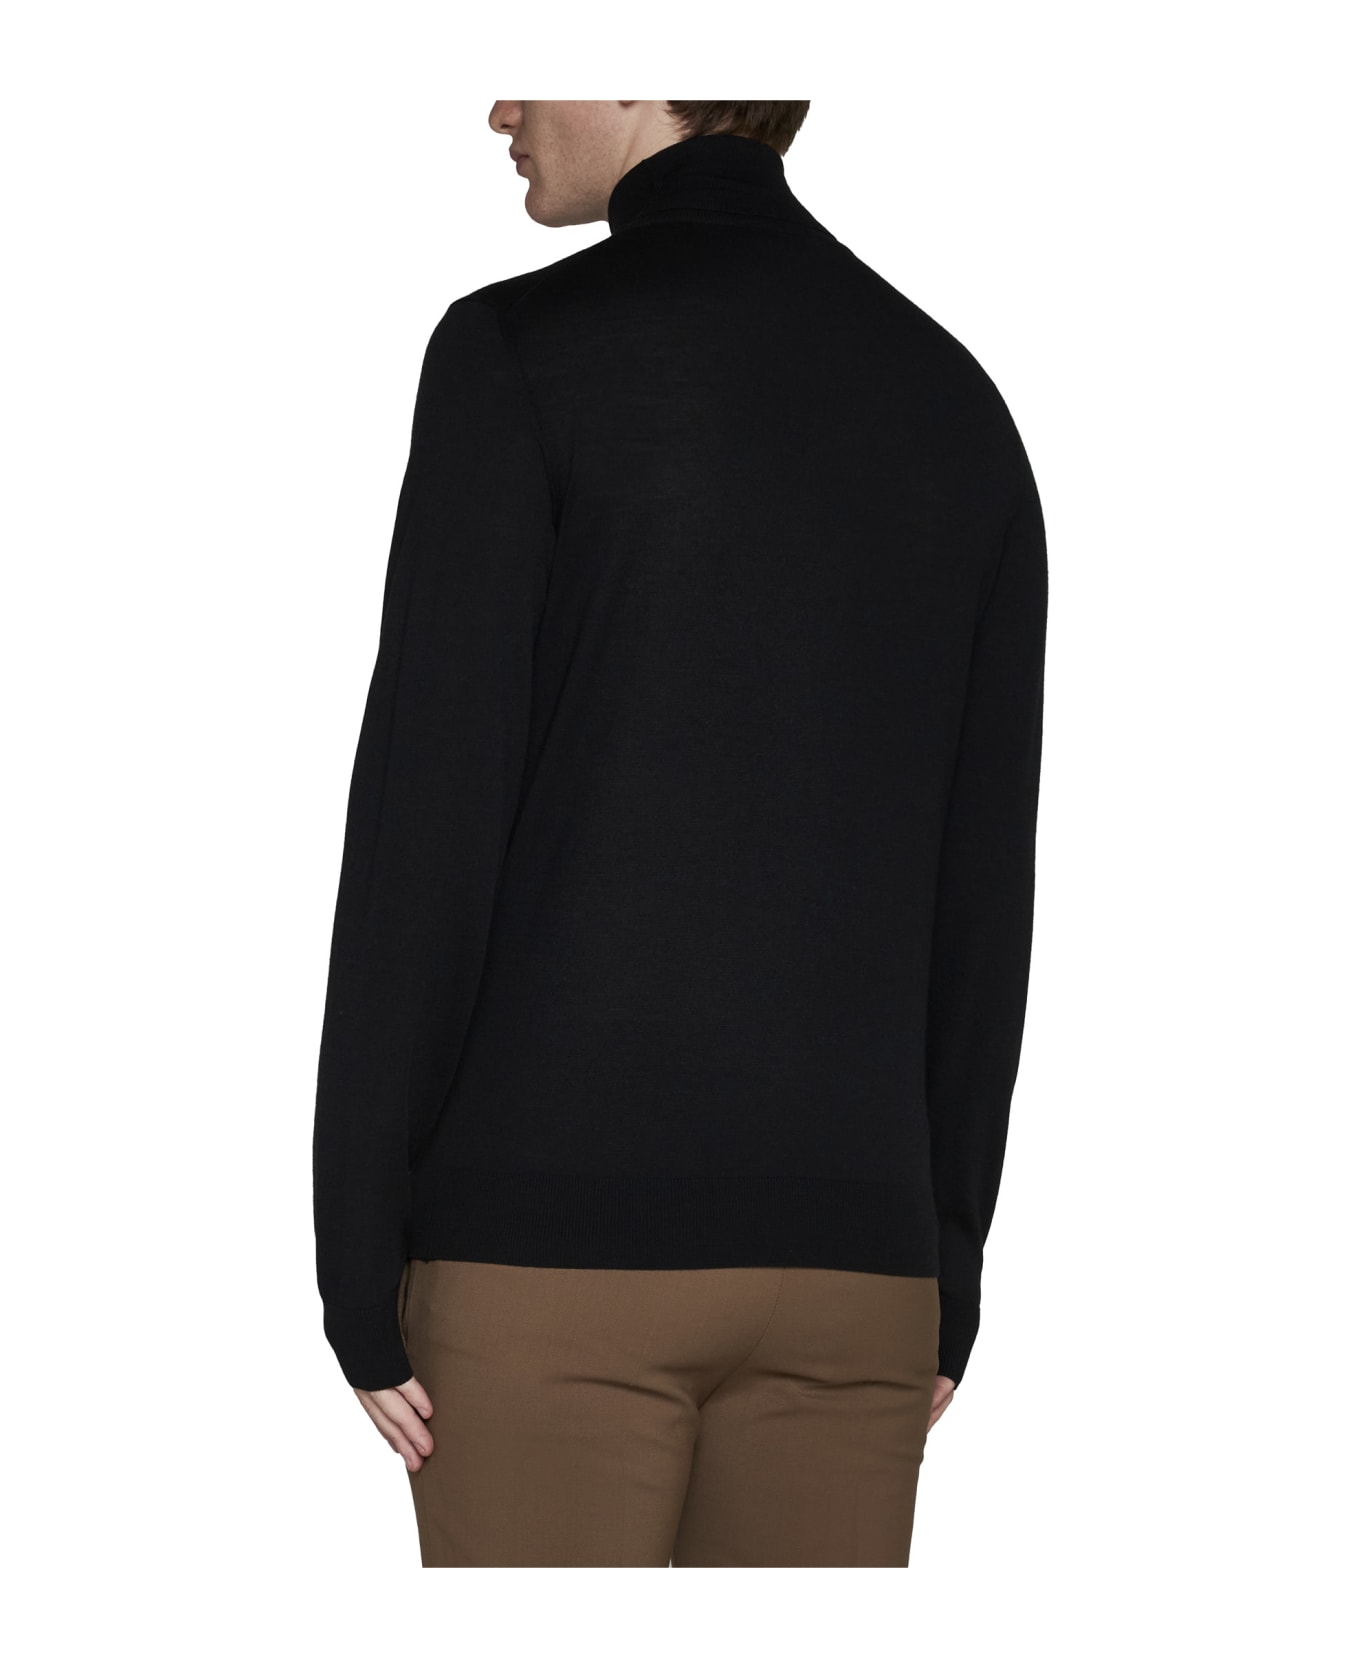 Piacenza Cashmere Sweater - Black ニットウェア